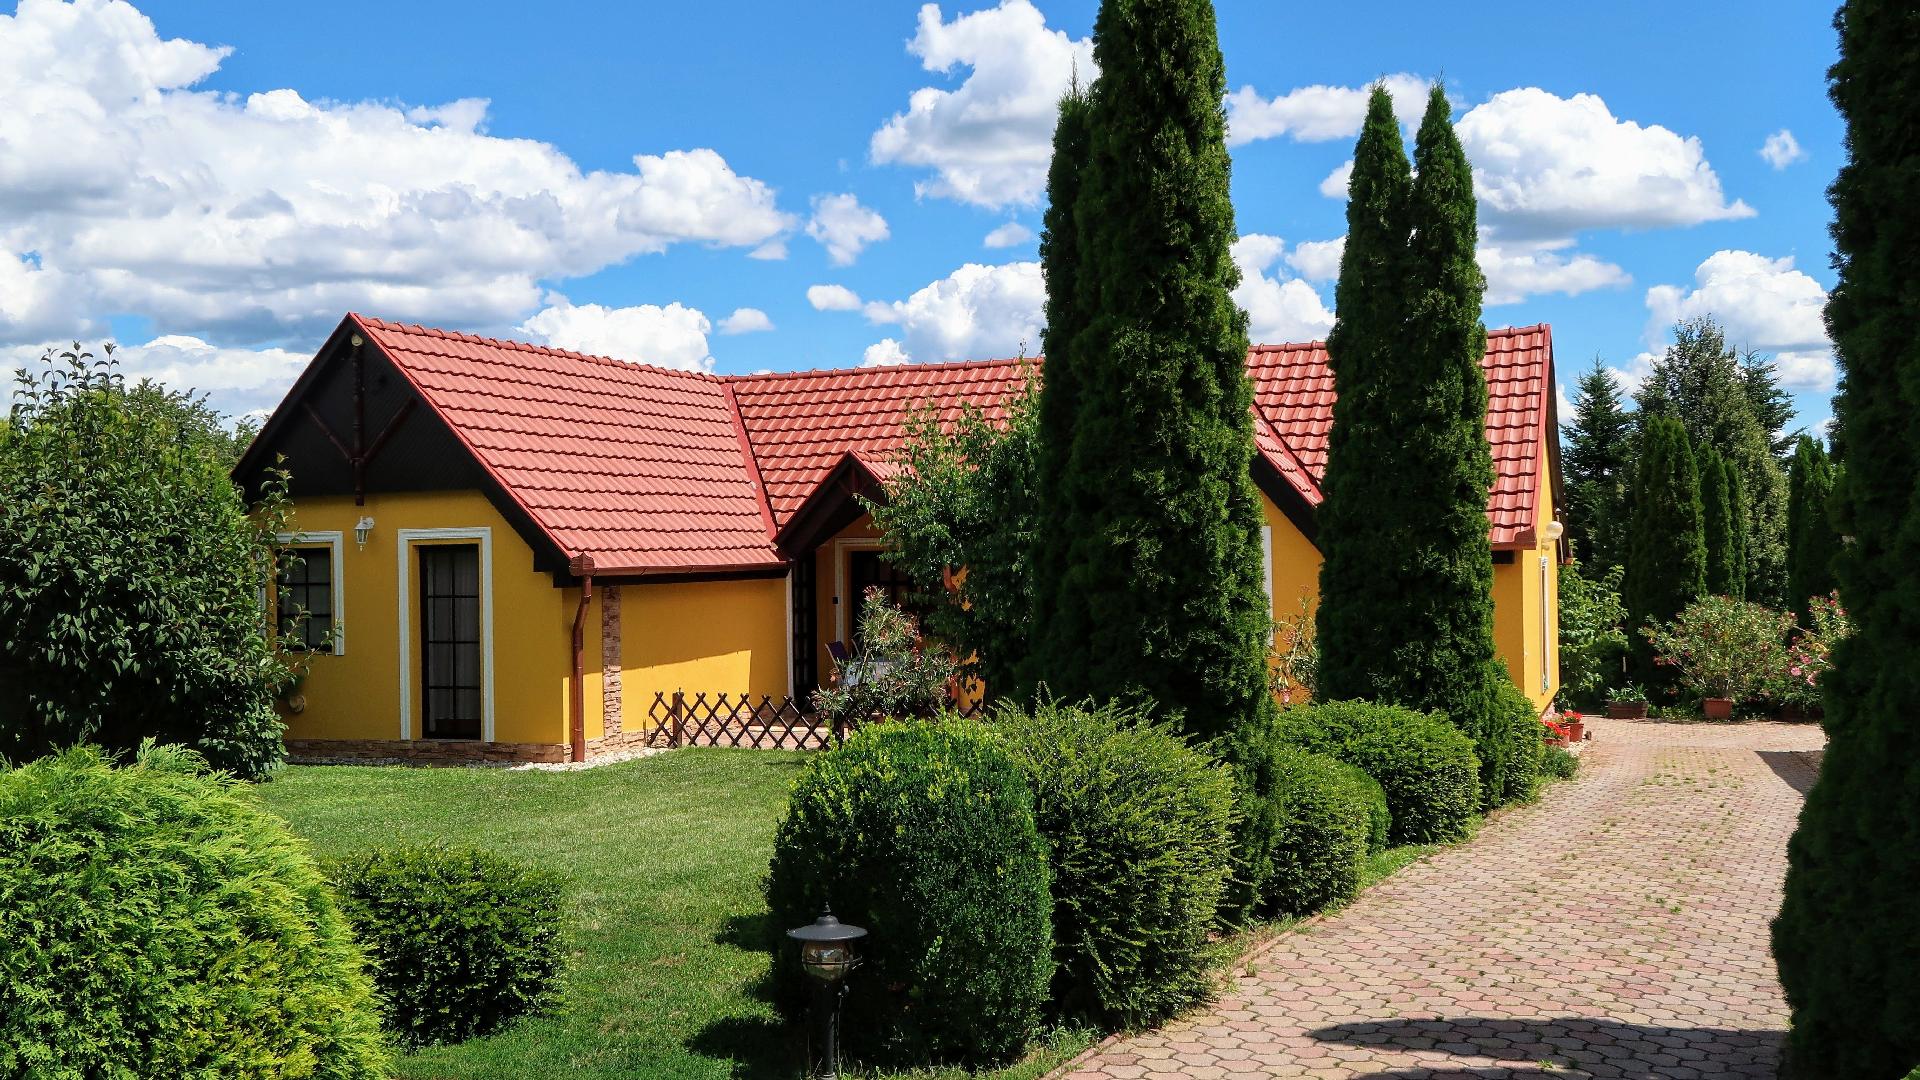 Ferienwohnung für 4 Personen  + 1 Kind ca. 55 Ferienhaus in Ungarn